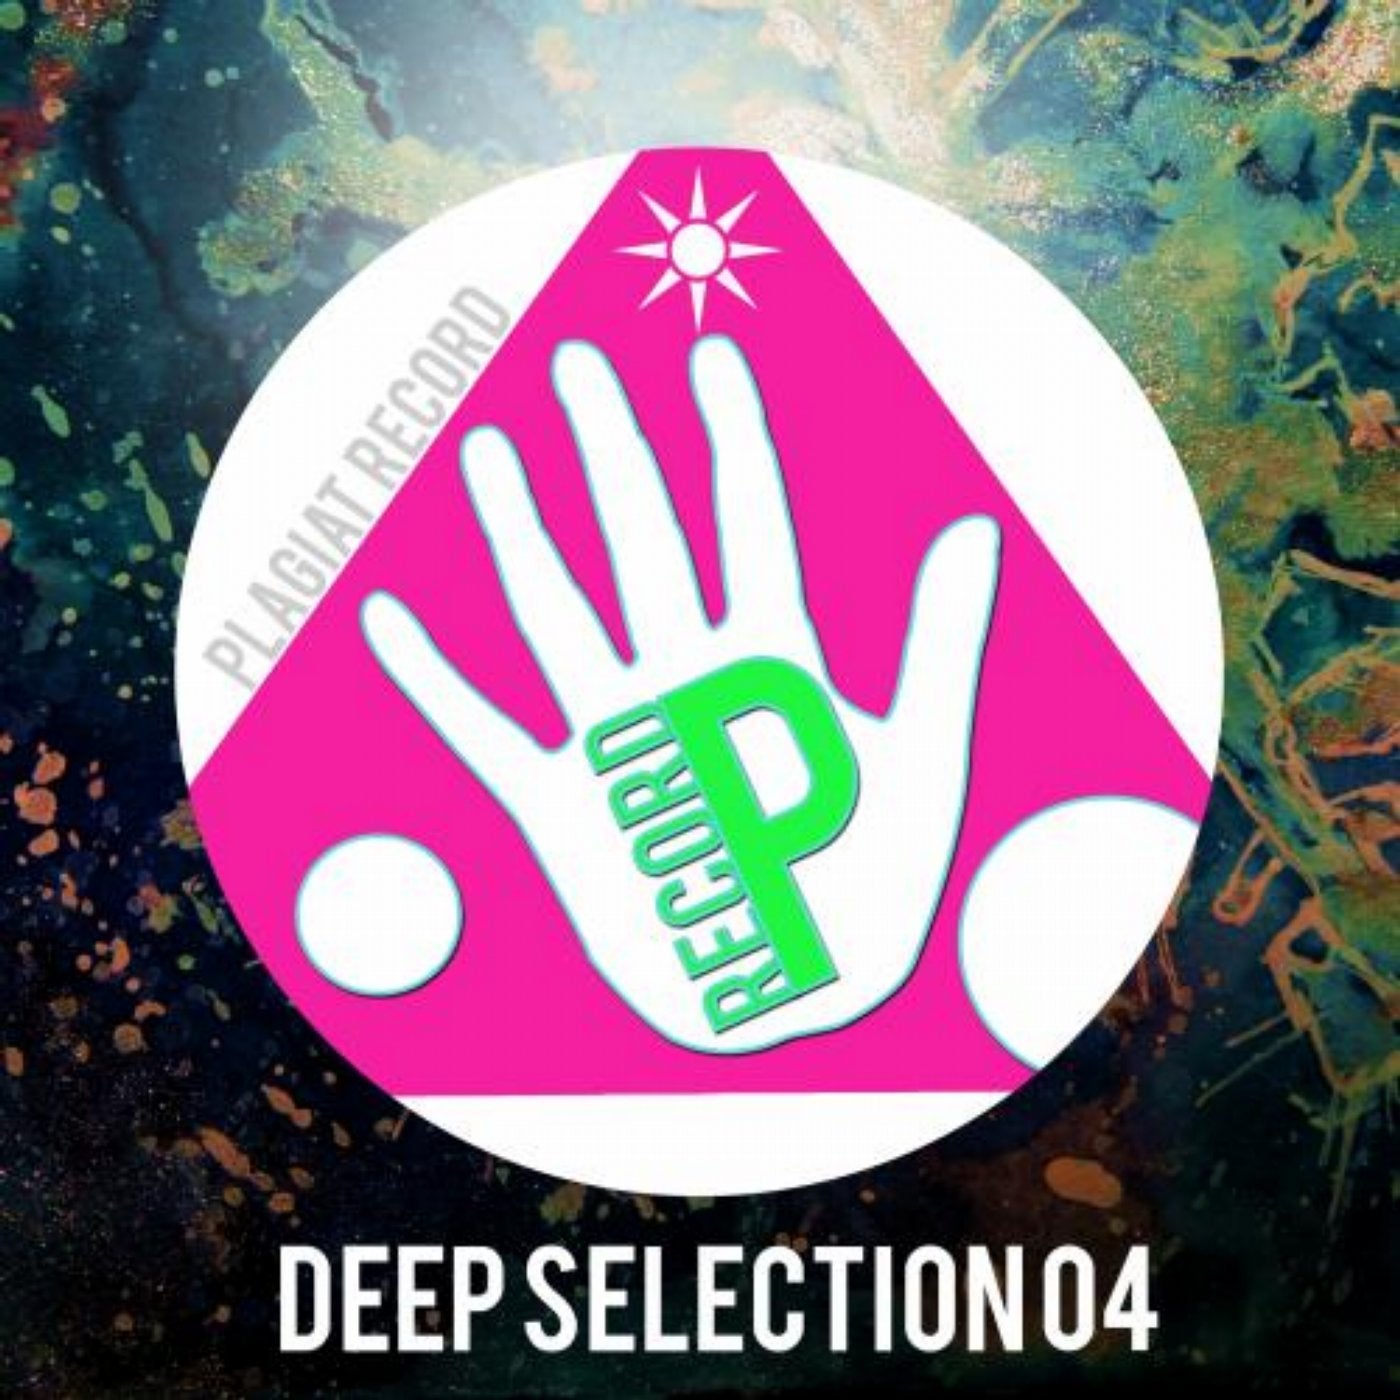 Deep Selection 04